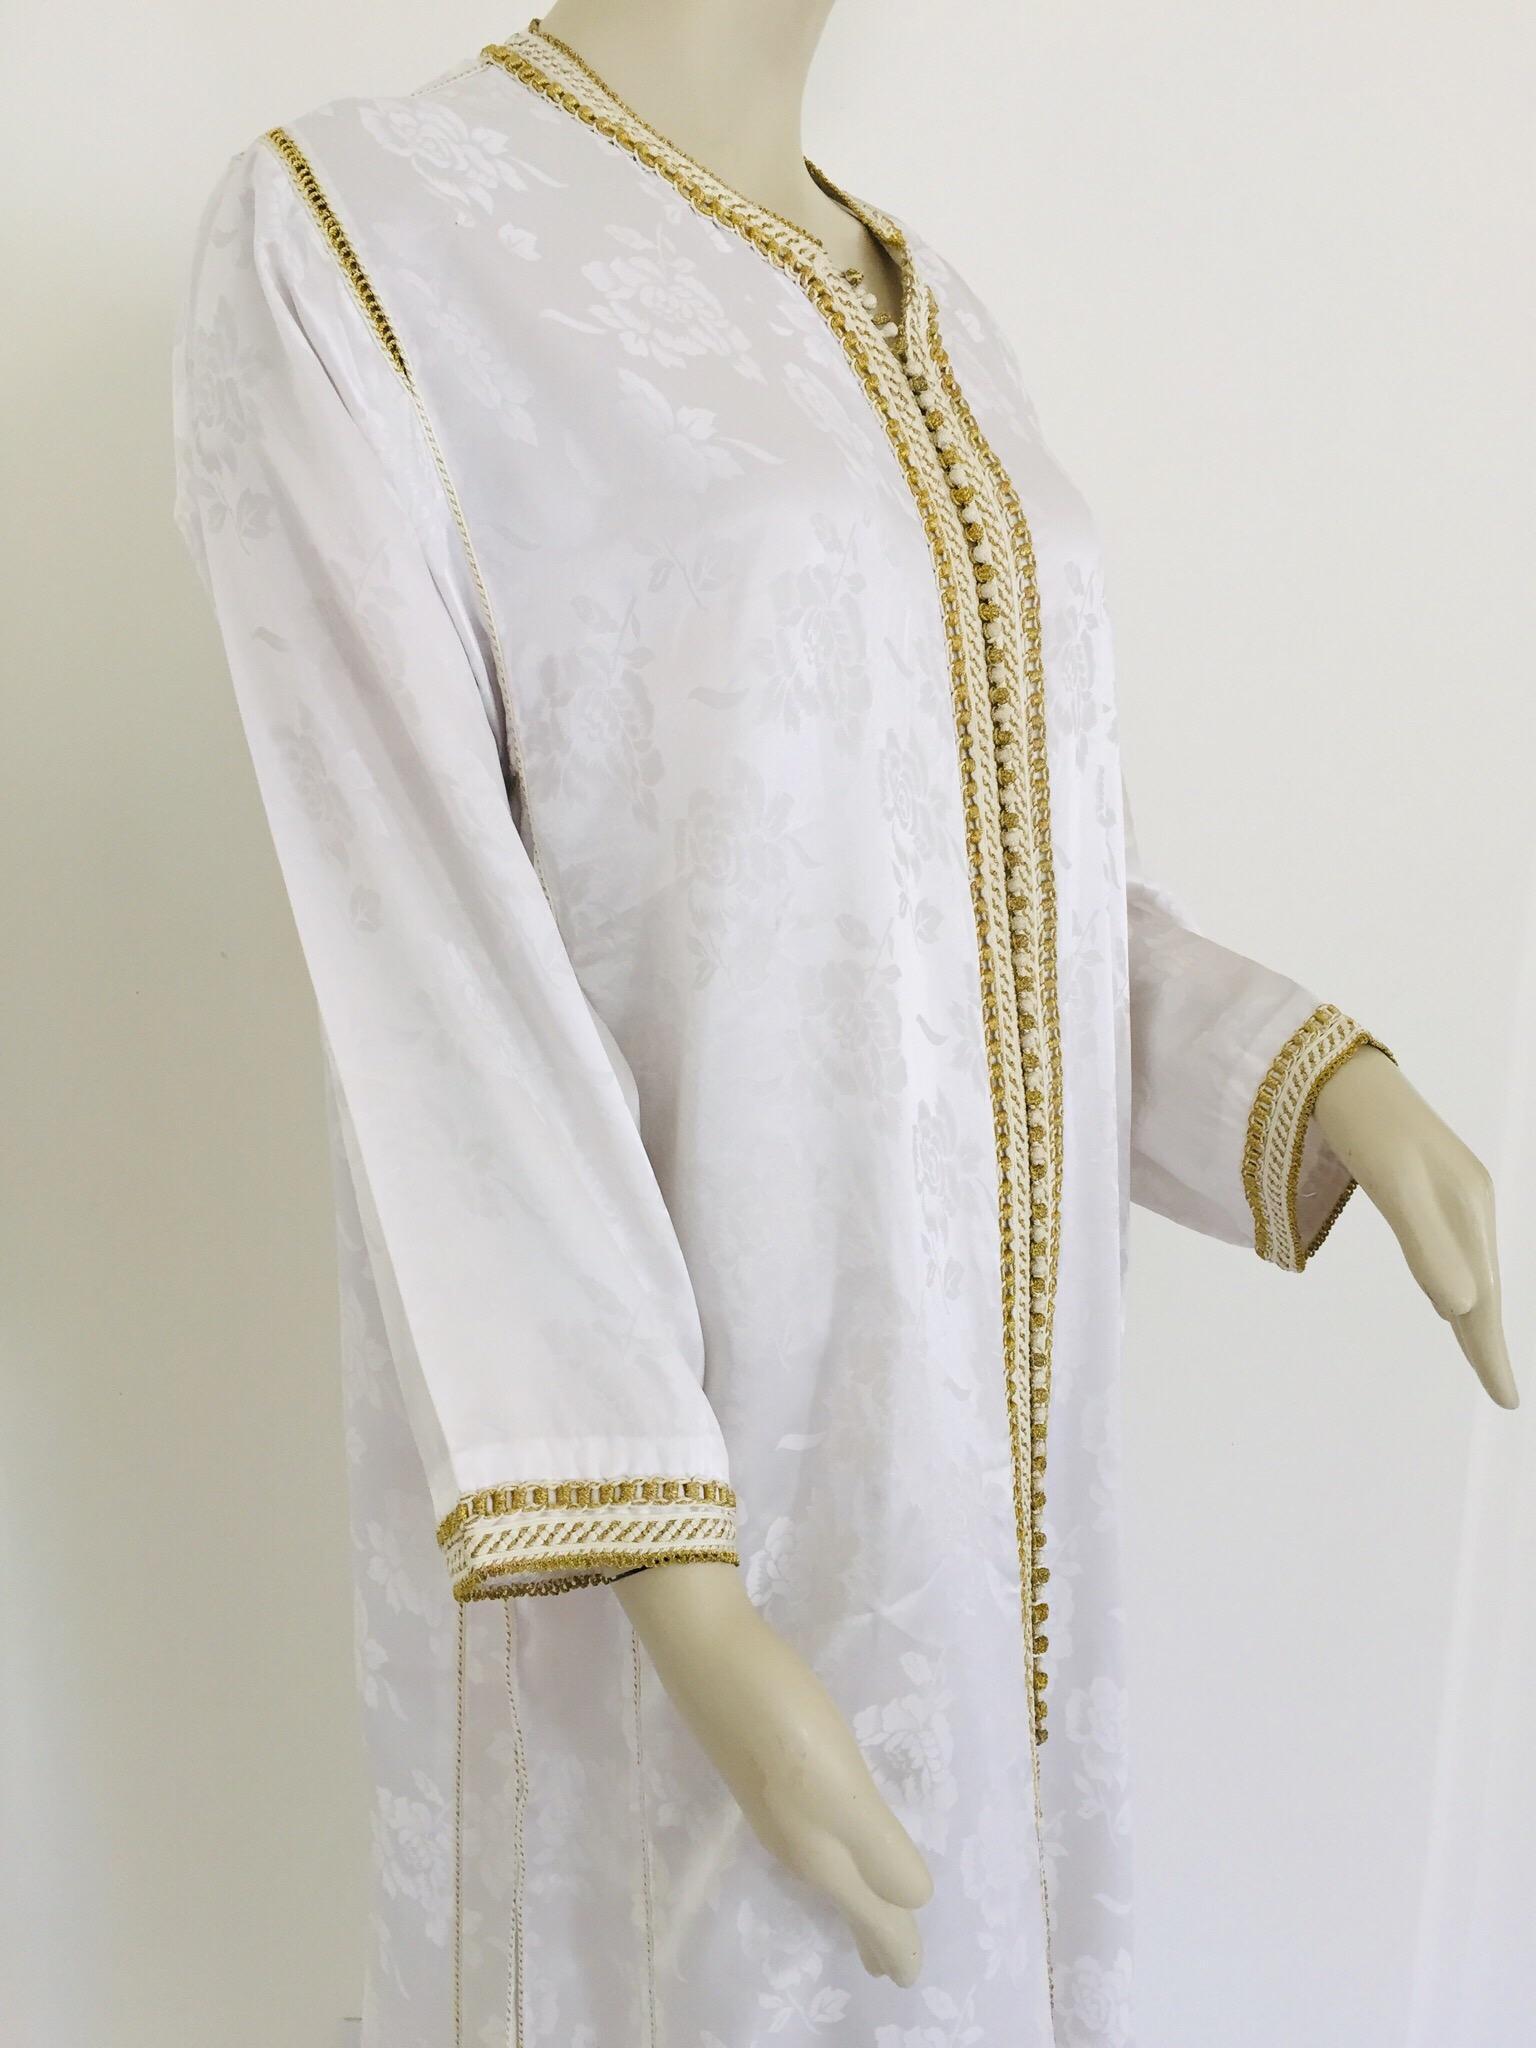 Élégant caftan marocain blanc brodé de fleurs avec bordure dorée,
vers les années 1970.
Cette longue robe longue à bordure caftan est brodée et agrémentée entièrement à la main.
Robe de soirée marocaine du Moyen-Orient, unique en son genre.
Le